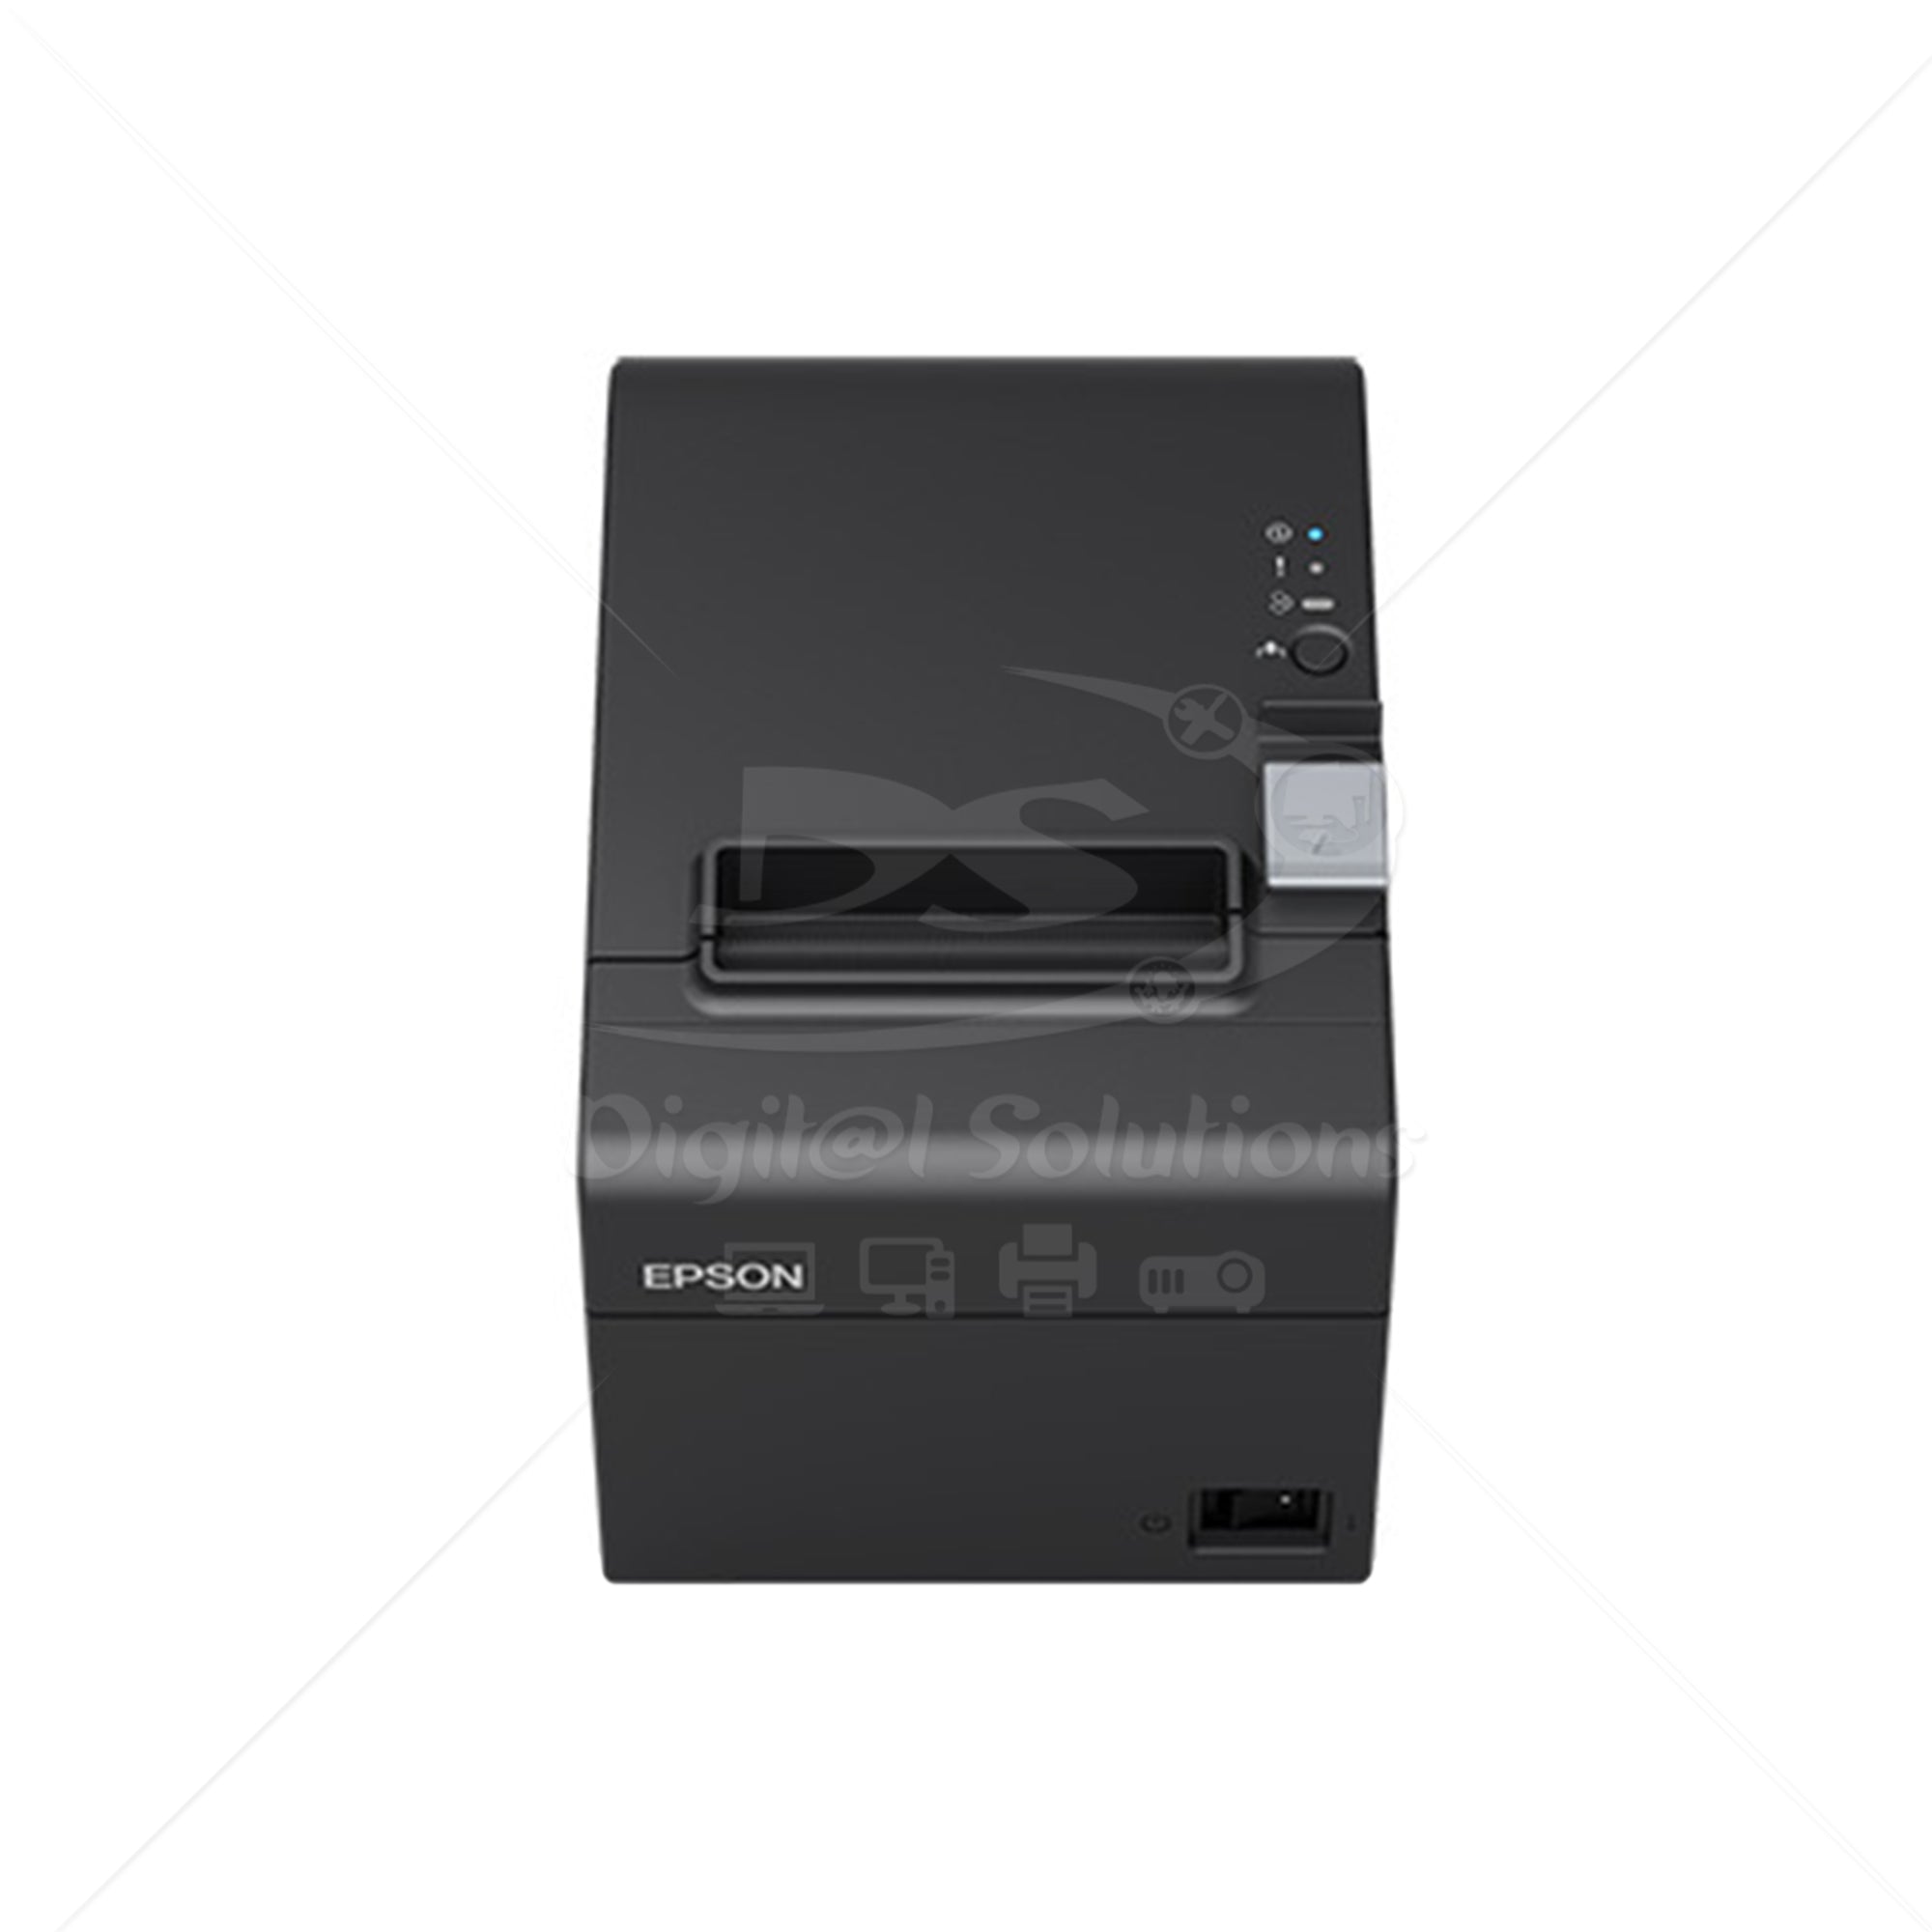 Conoce usos y aplicaciones de una impresora térmica